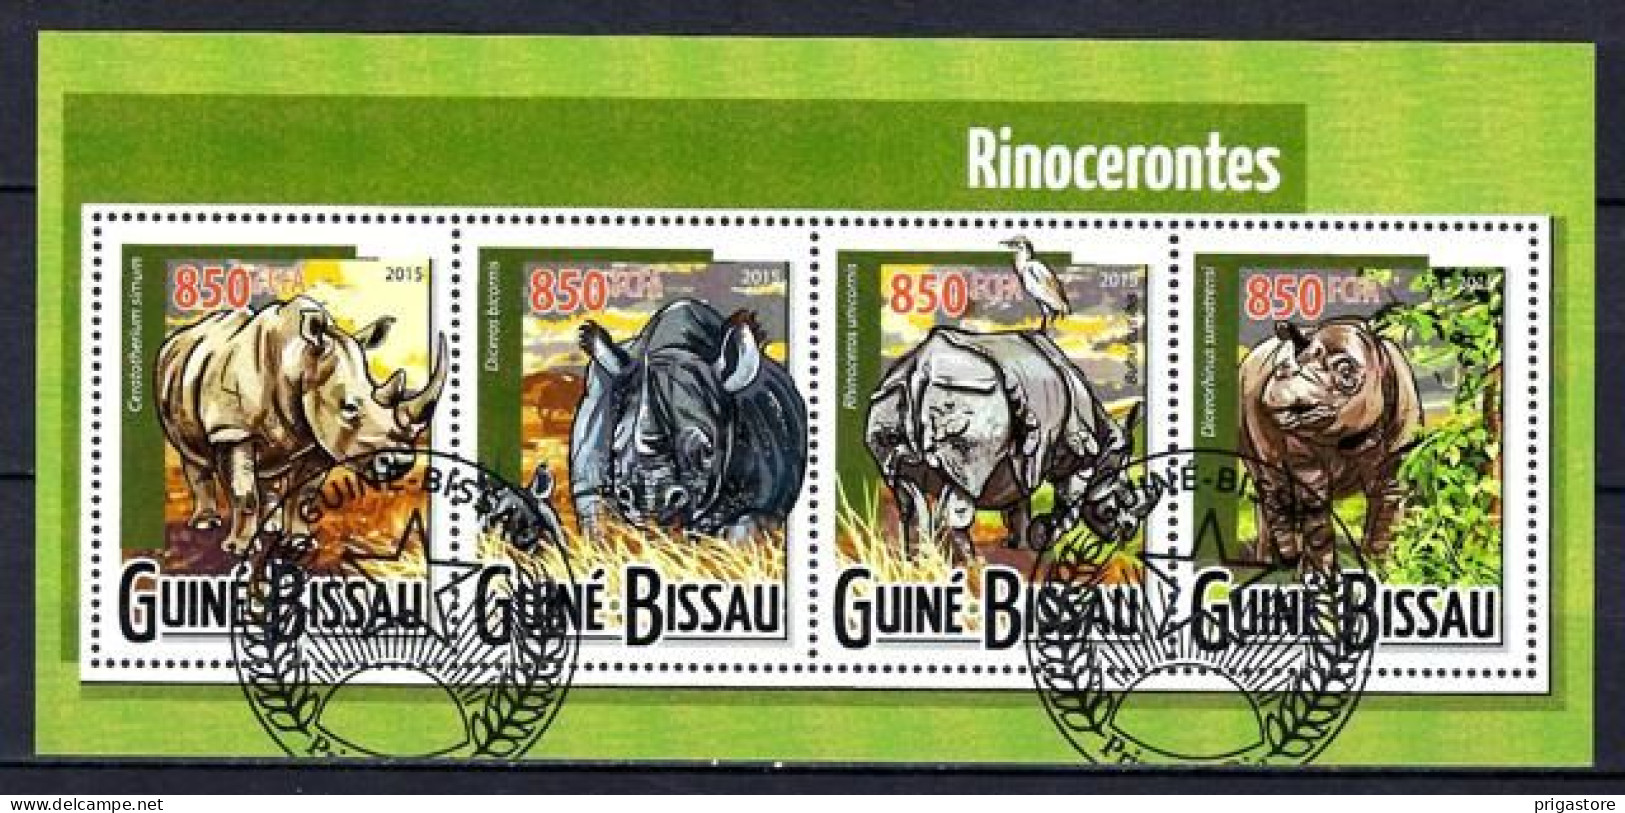 Animaux Rhinocéros Guinée Bissau 2015 (329) Yvert N° 6012 à 6015 Oblitérés Used - Rinocerontes